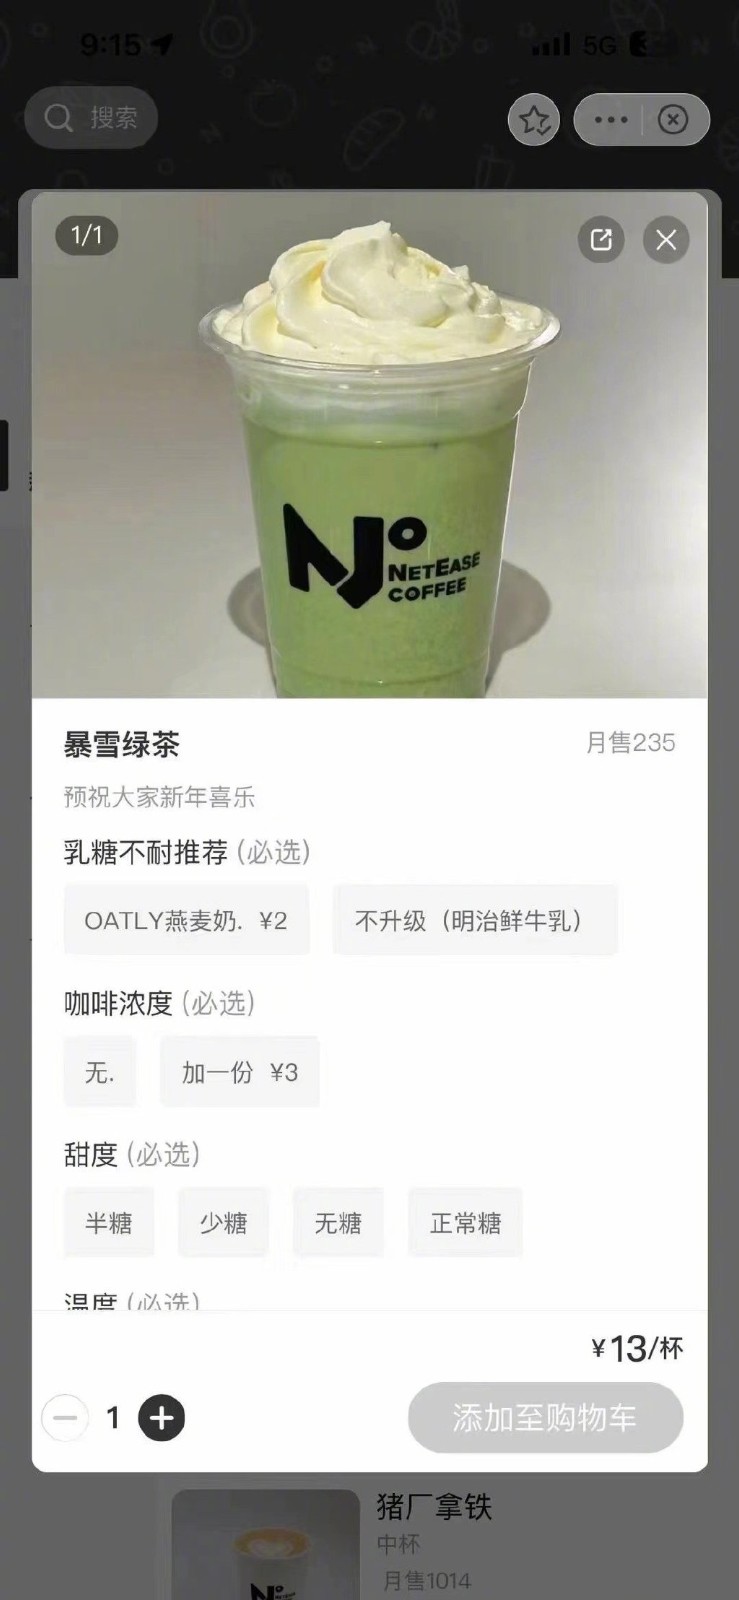 网传网易咖啡厅推出“暴雪绿茶”饮品 订单火爆已售罄